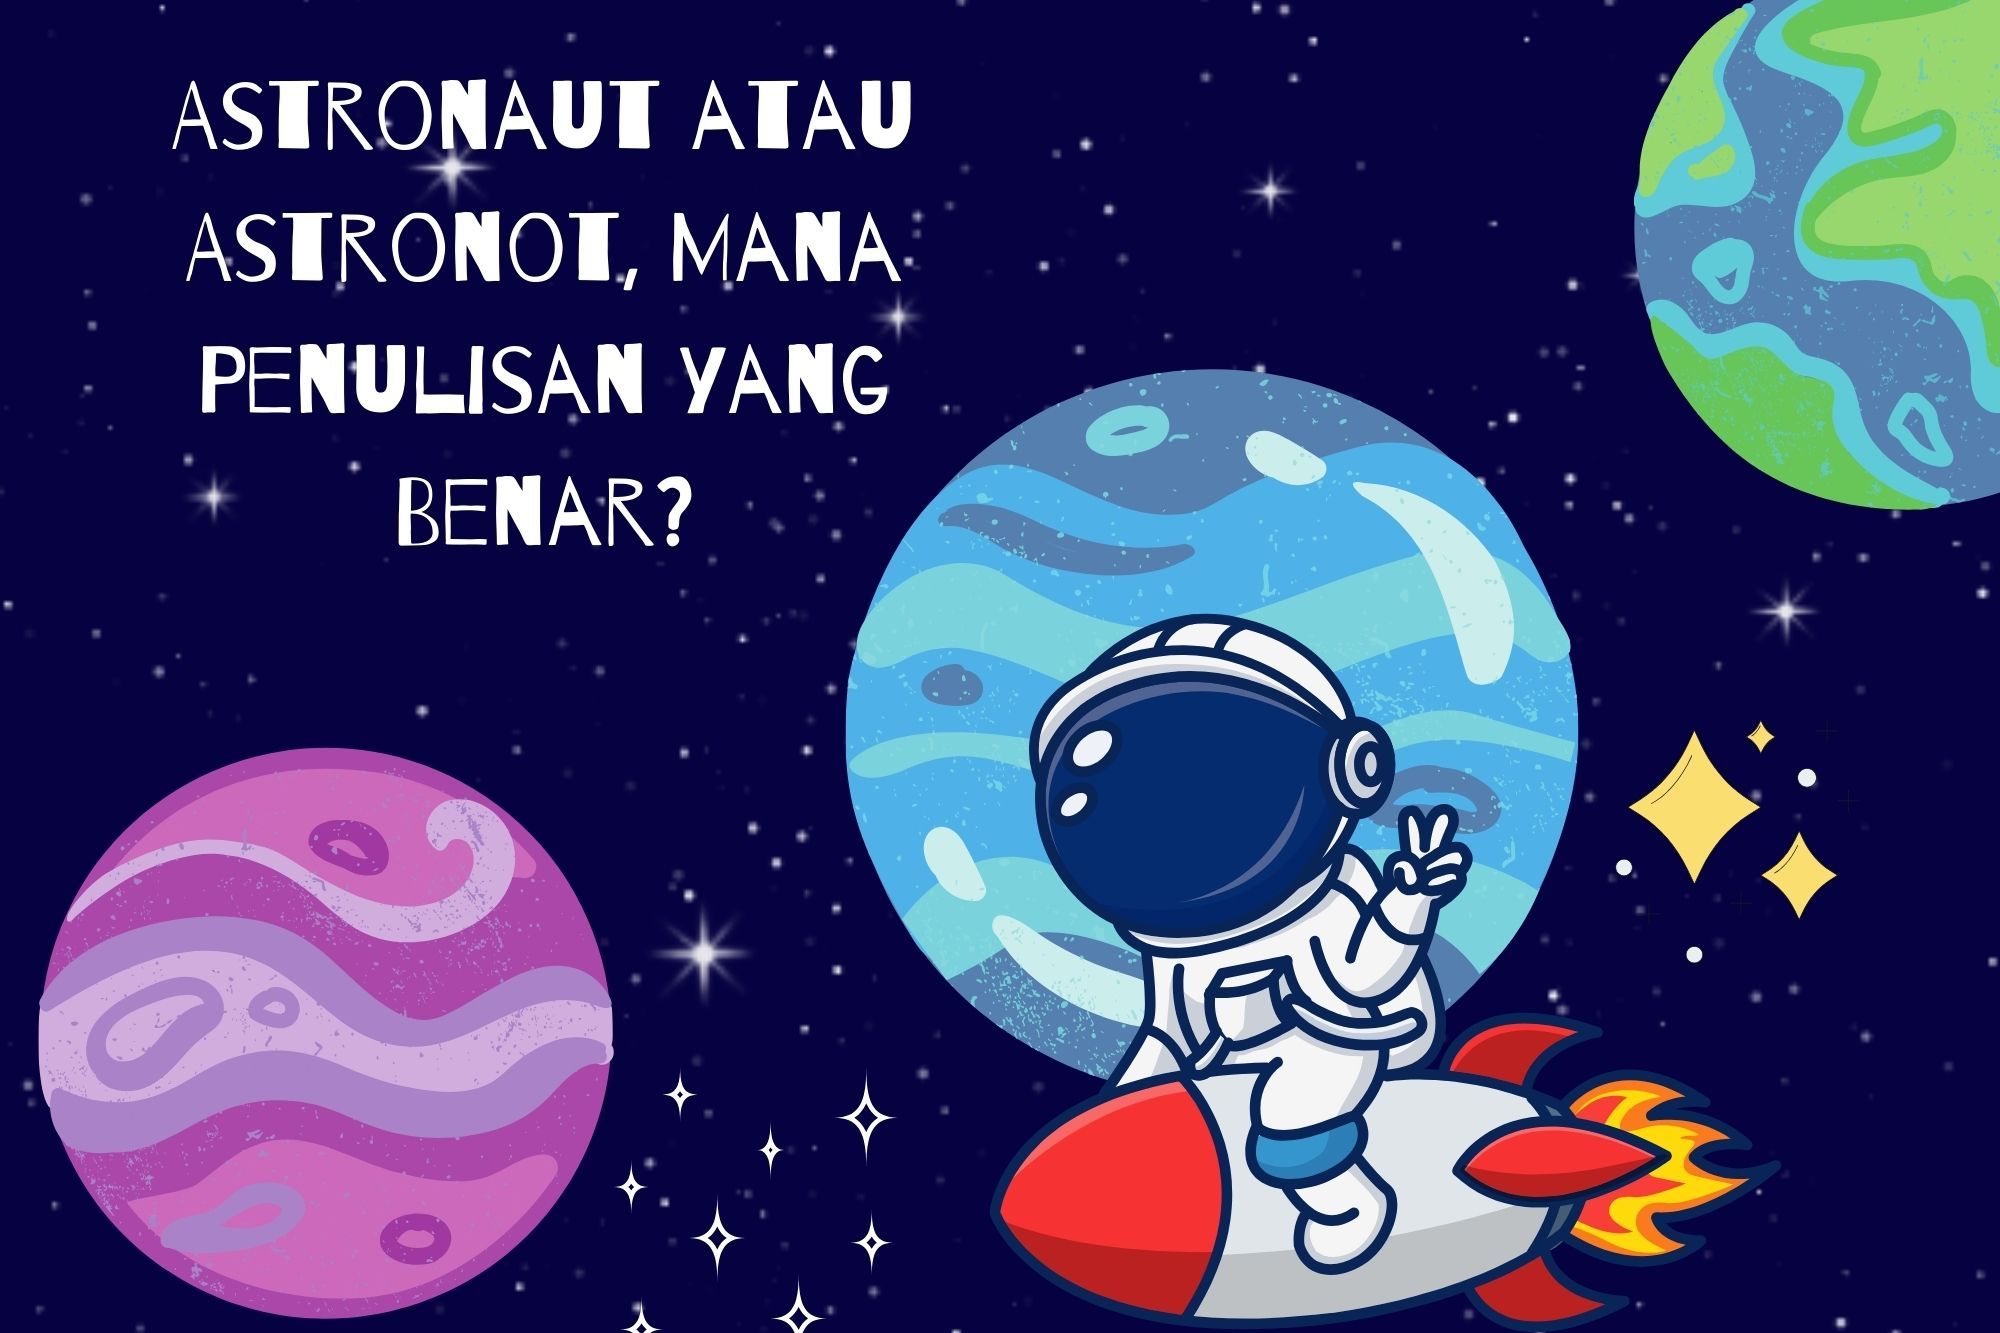 Astronaut atau Astronot, Mana Penulisan yang Benar?